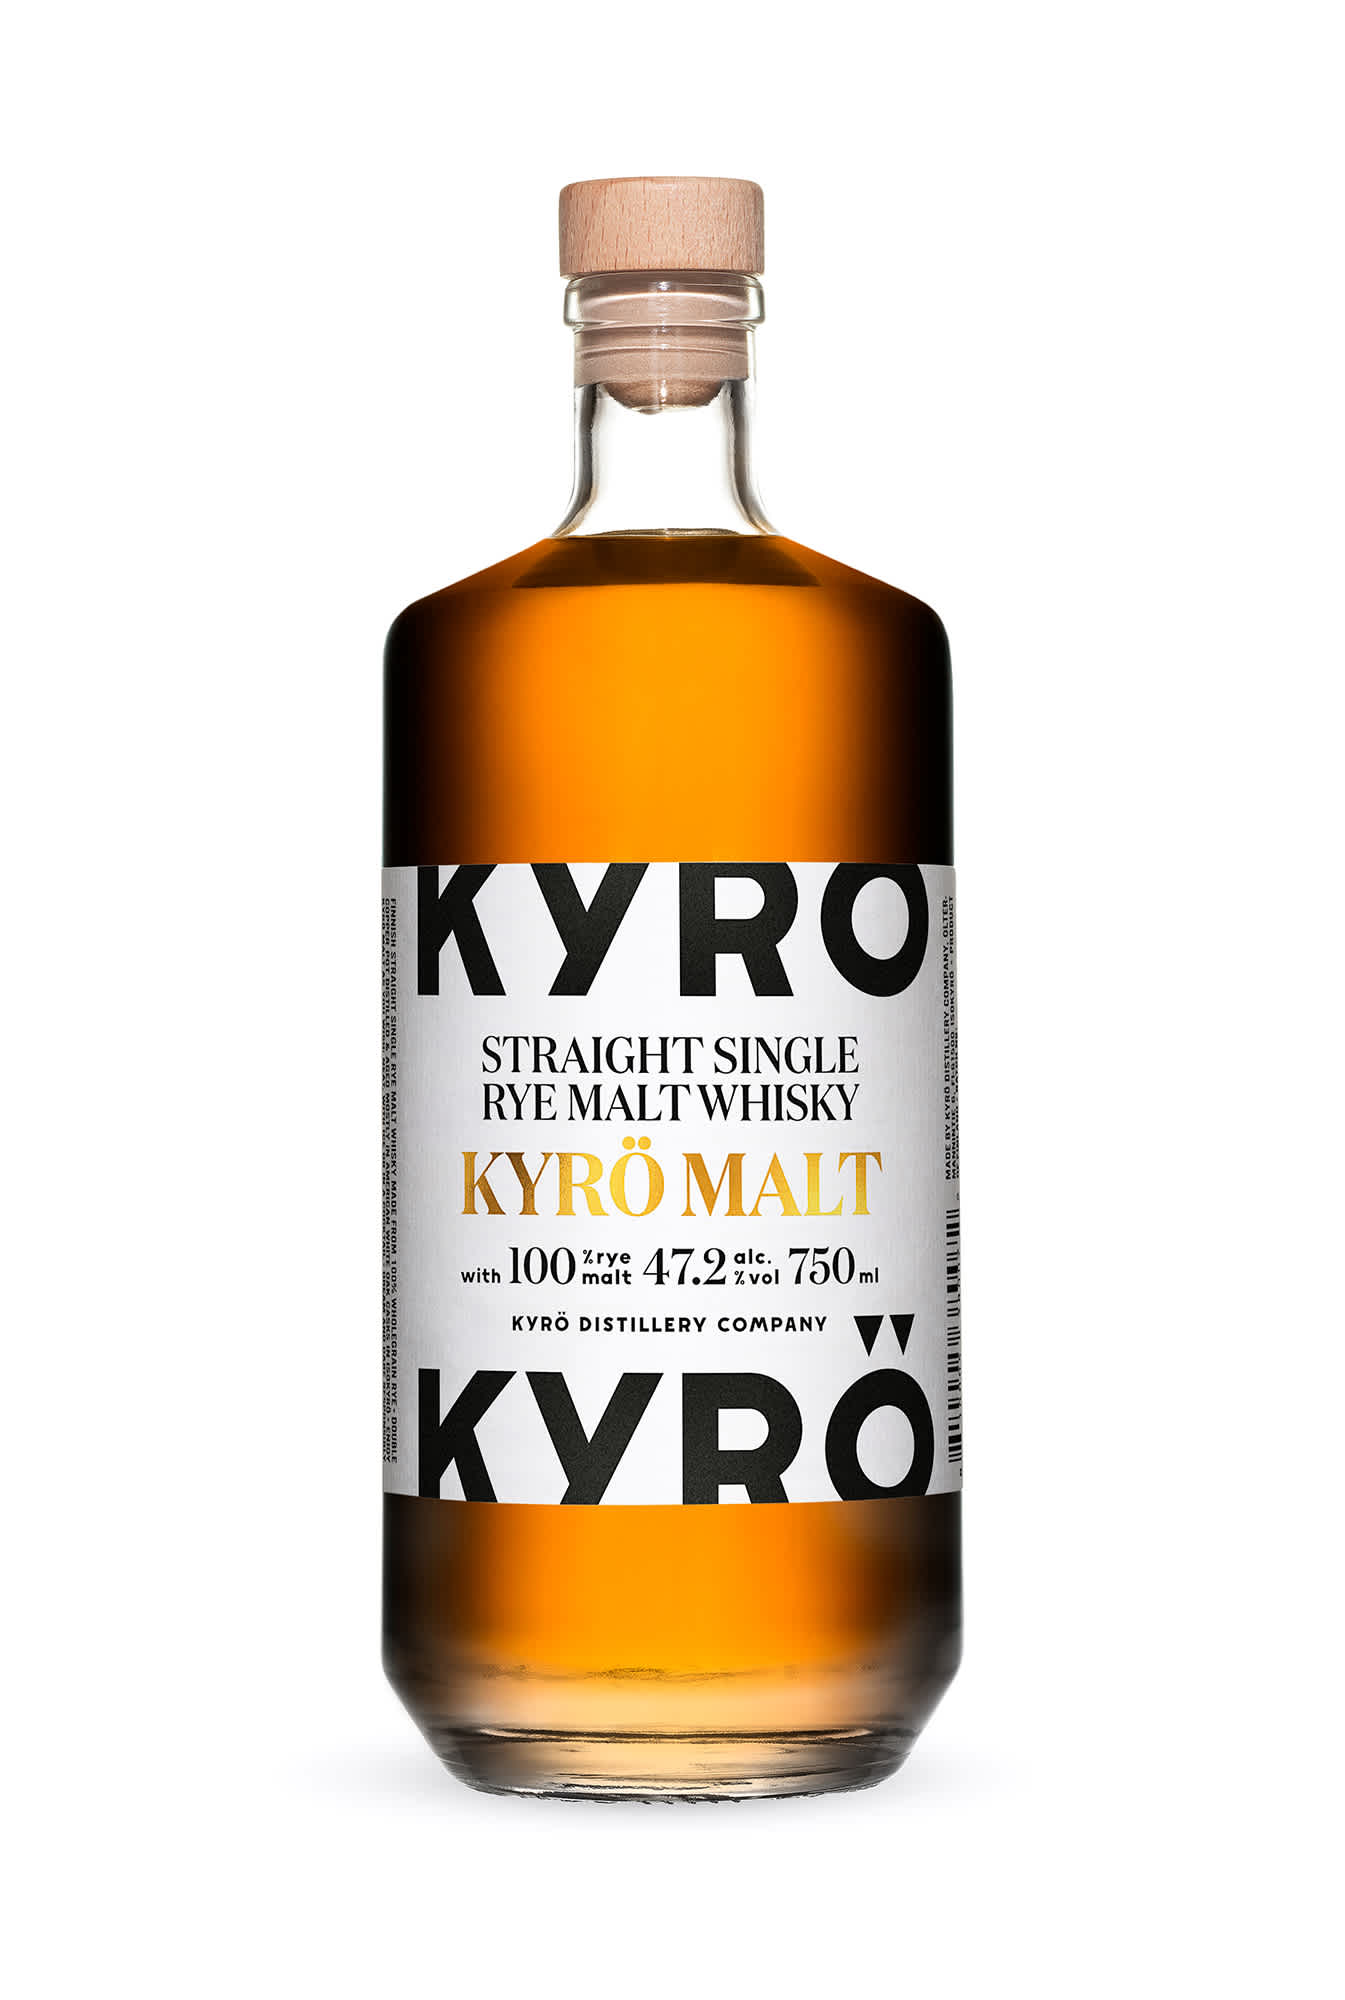 750 ml Bottle of Finnish rye whisky, Kyrö Malt.